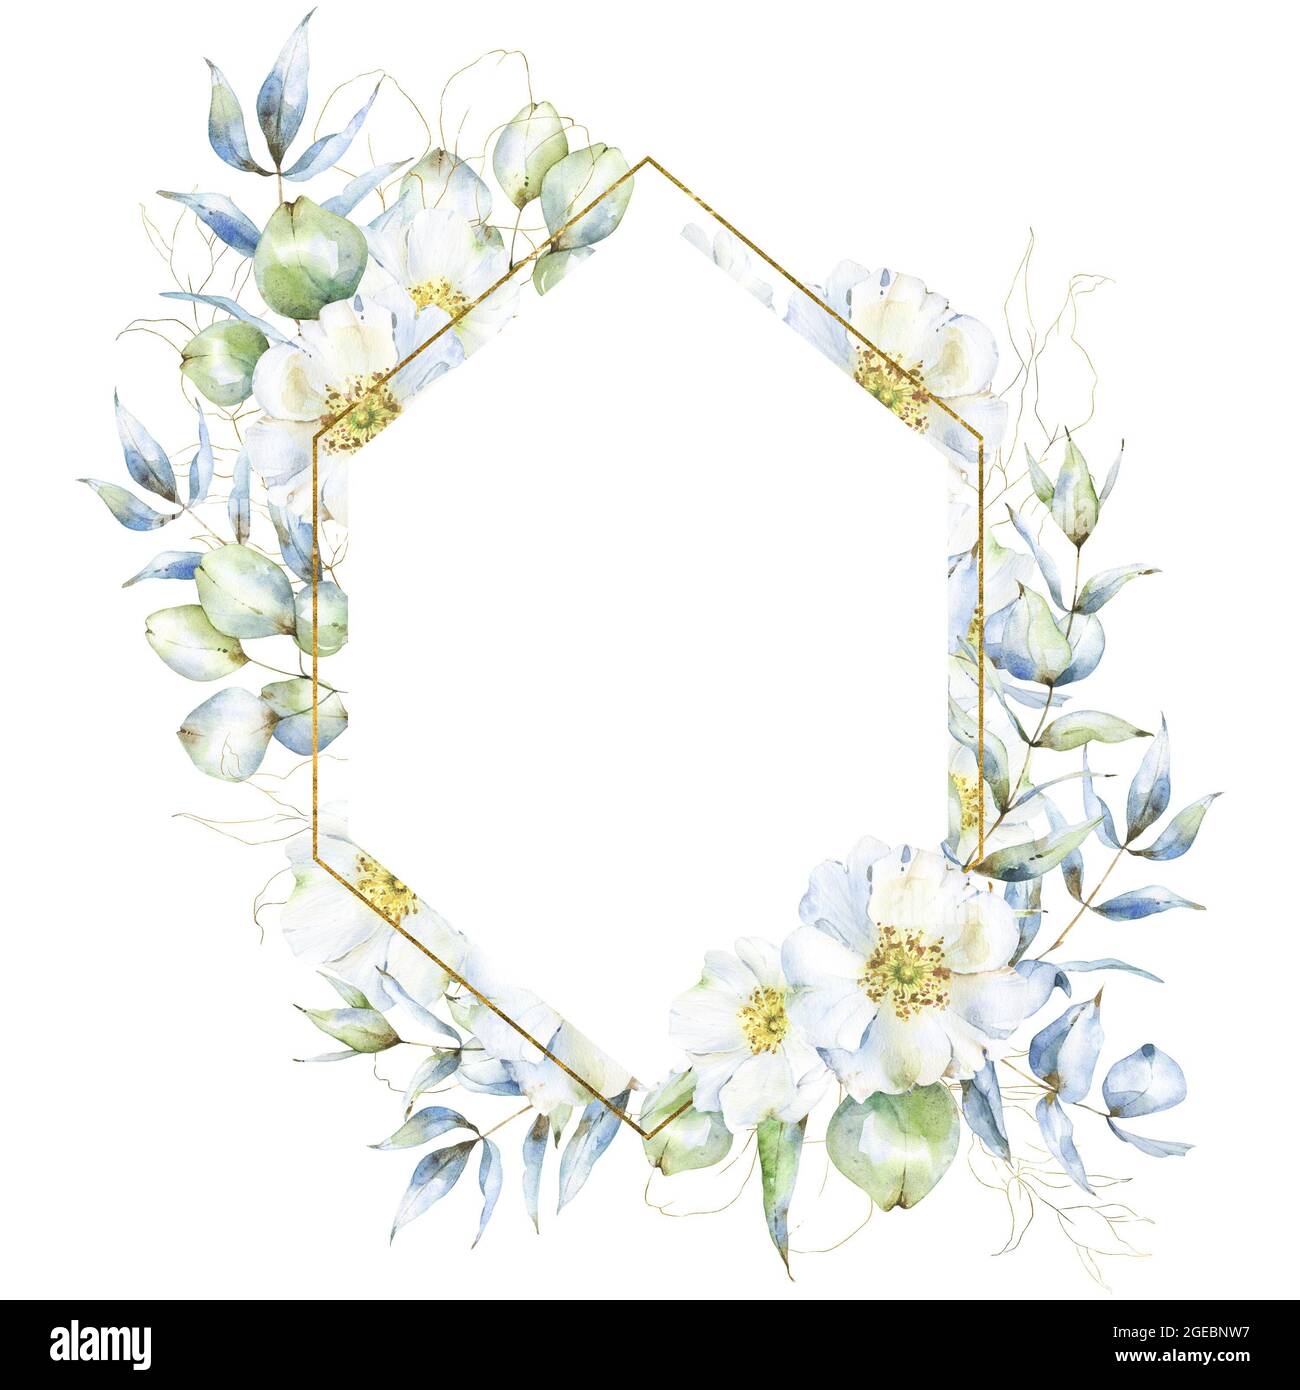 Marco de diamante blanco y dorado con ramas de eucalipto acuarela, hojas,  flores de rosa cadera y camarilla floral dorada, para invitaciones de boda,  tarjetas Fotografía de stock - Alamy